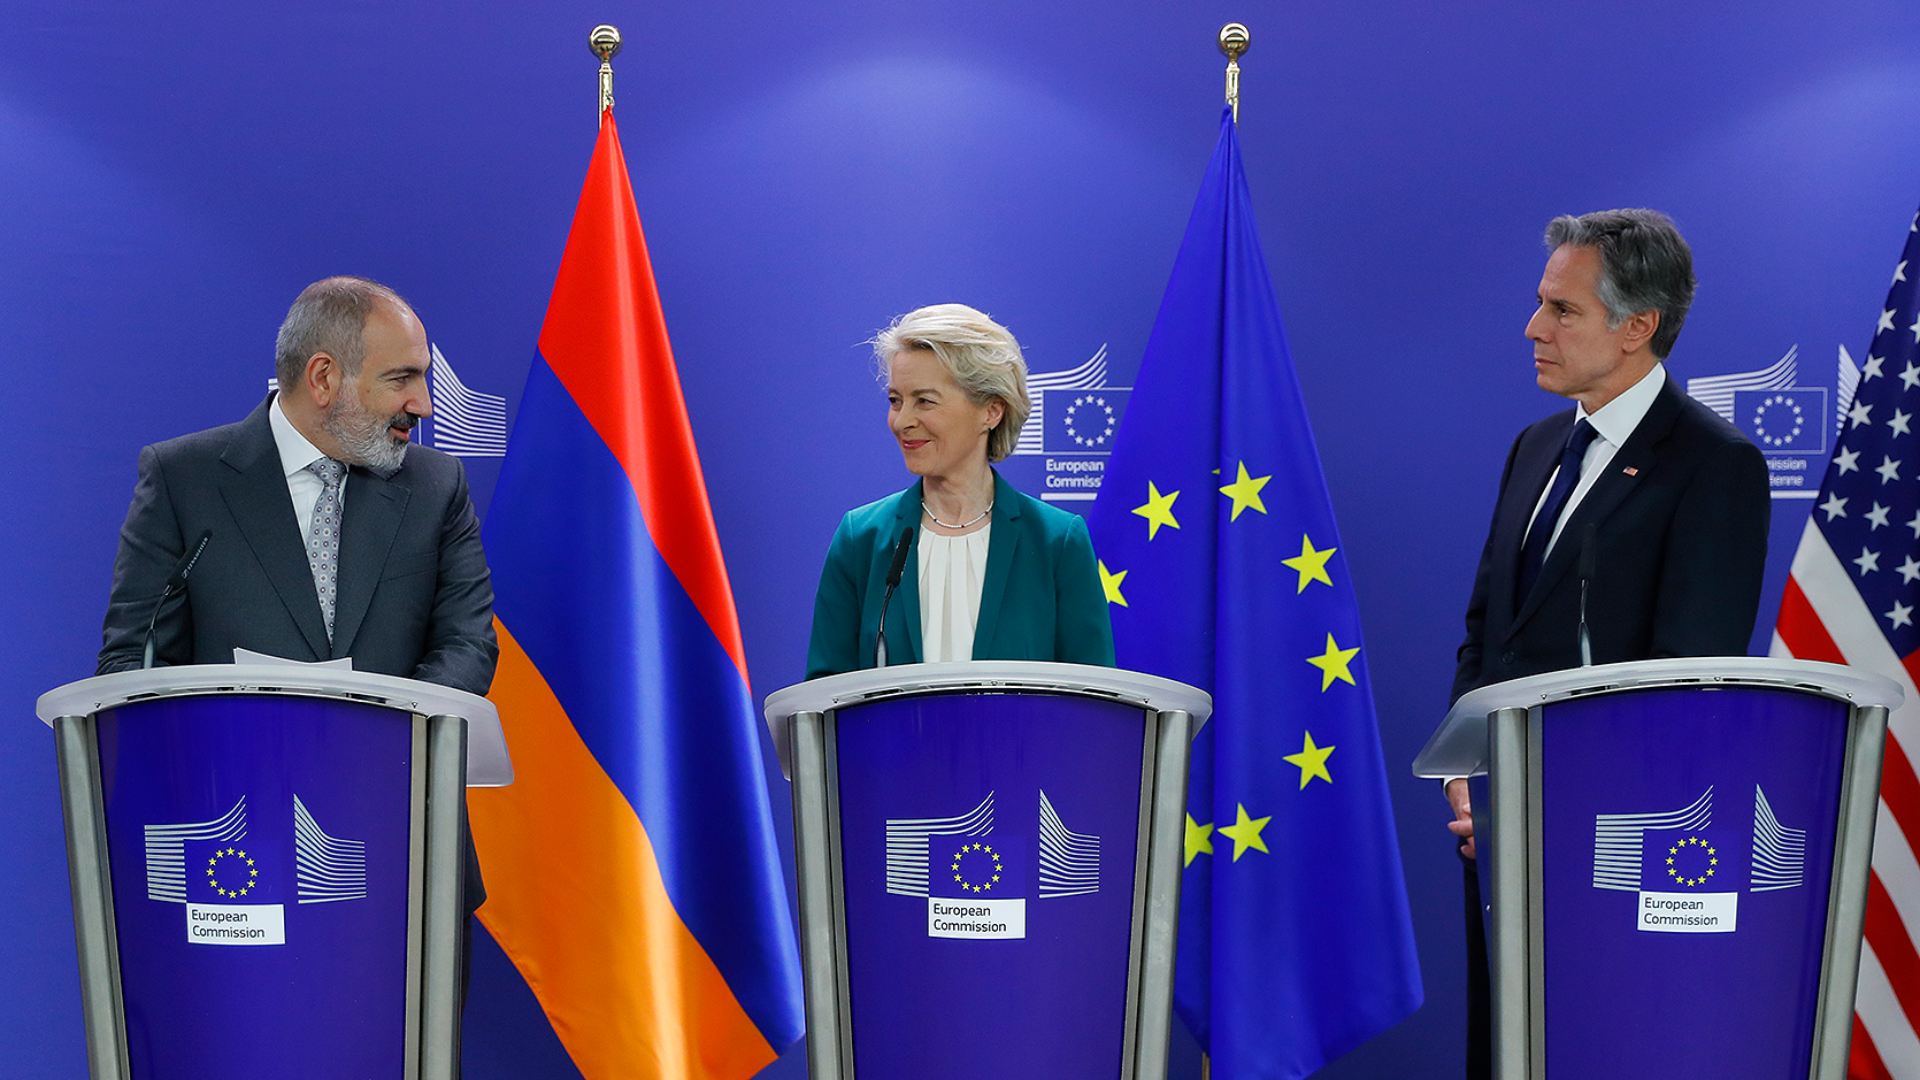 Այսօրվա երկխոսությունը նշանակում է Հայաստանի ընդլայնվող գործընկերությունը ԱՄՆ-ի և ԵՄ-ի հետ․ Փաշինյան